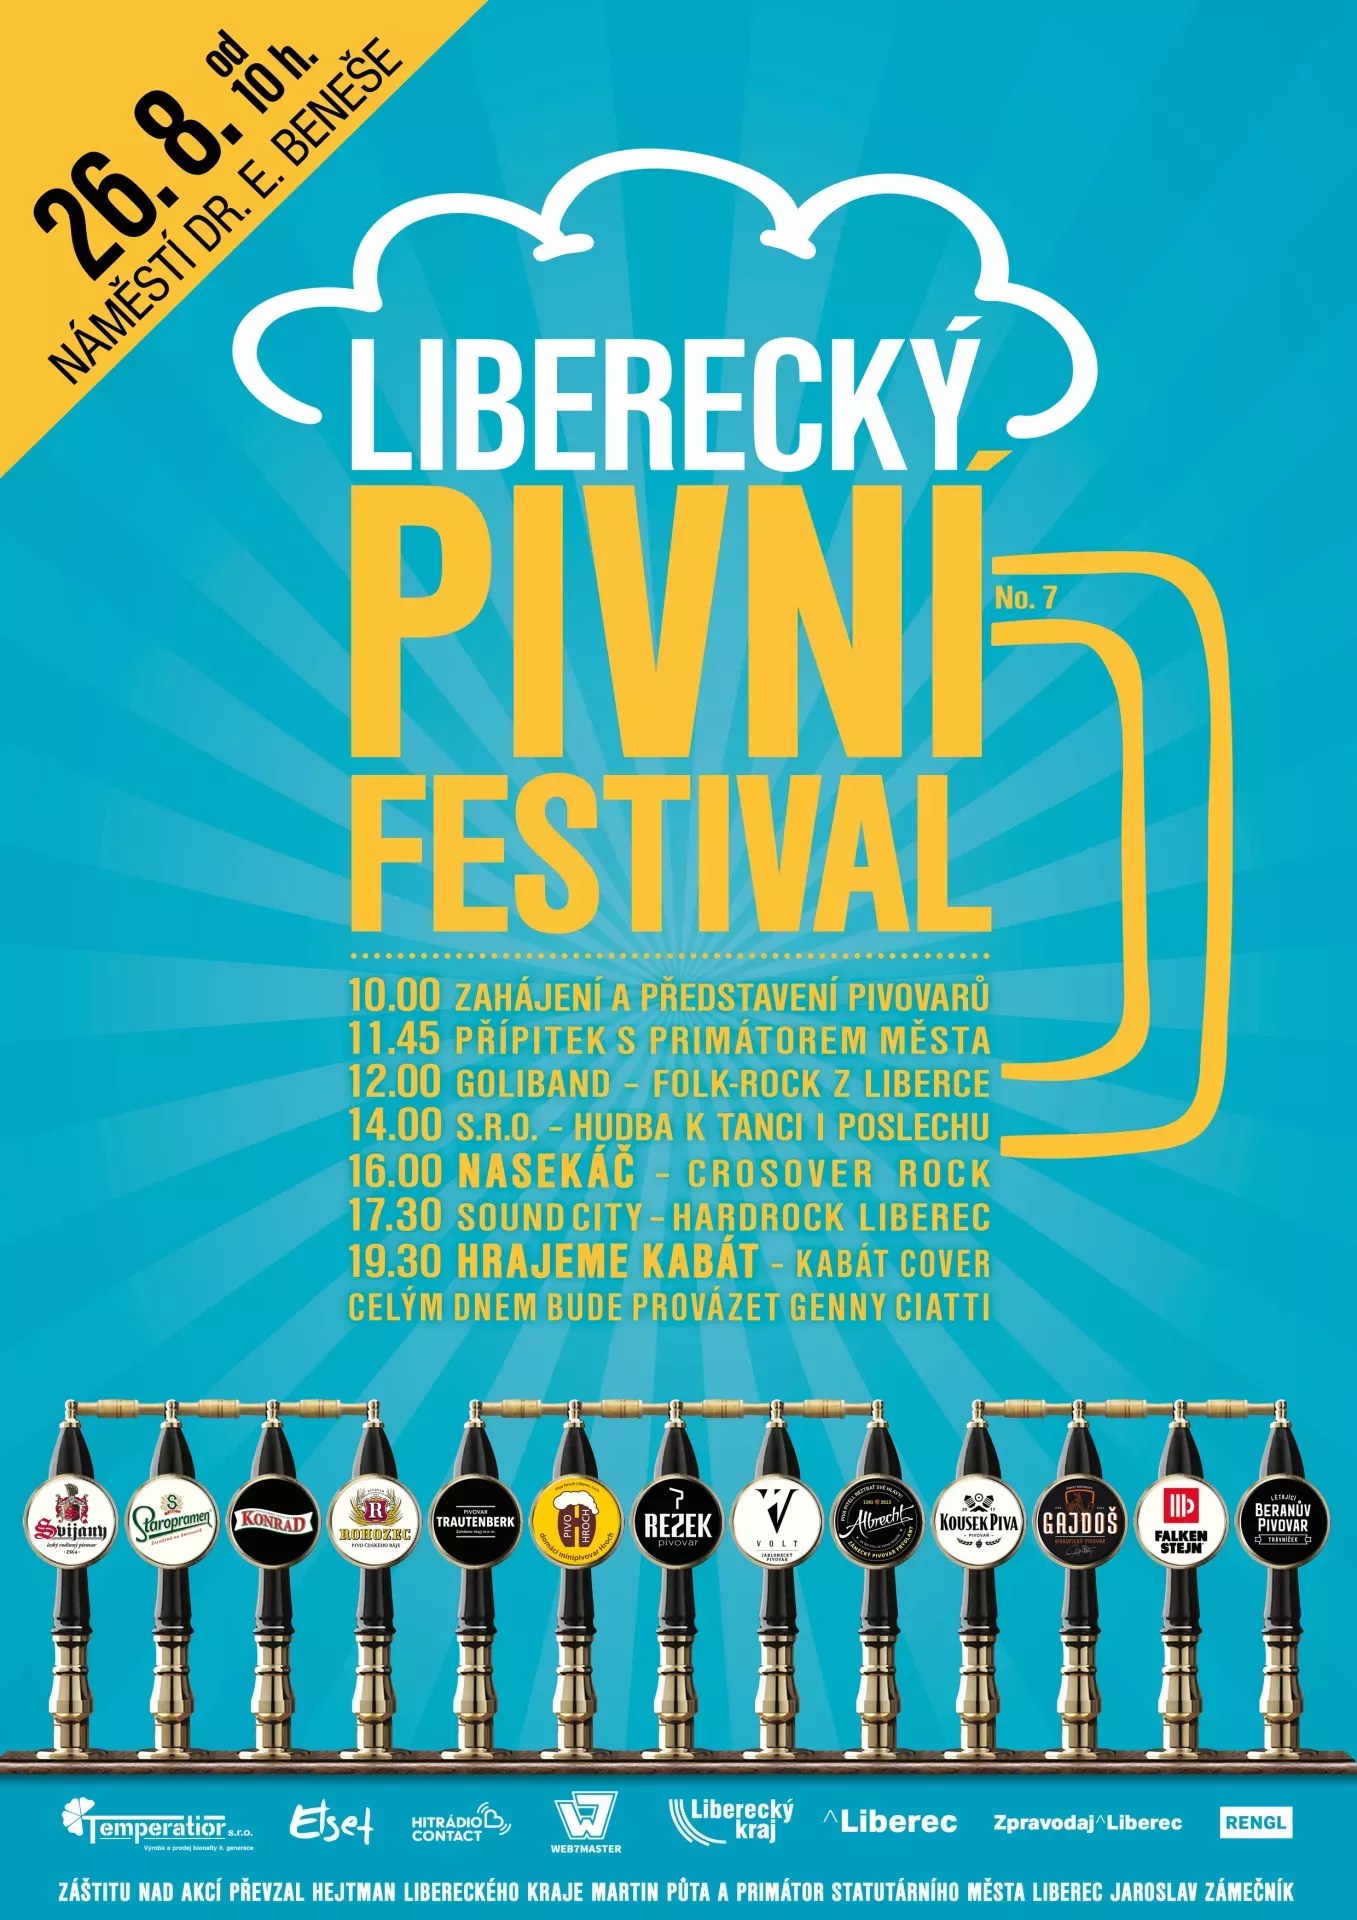 Liberecký pivní festival se blíží